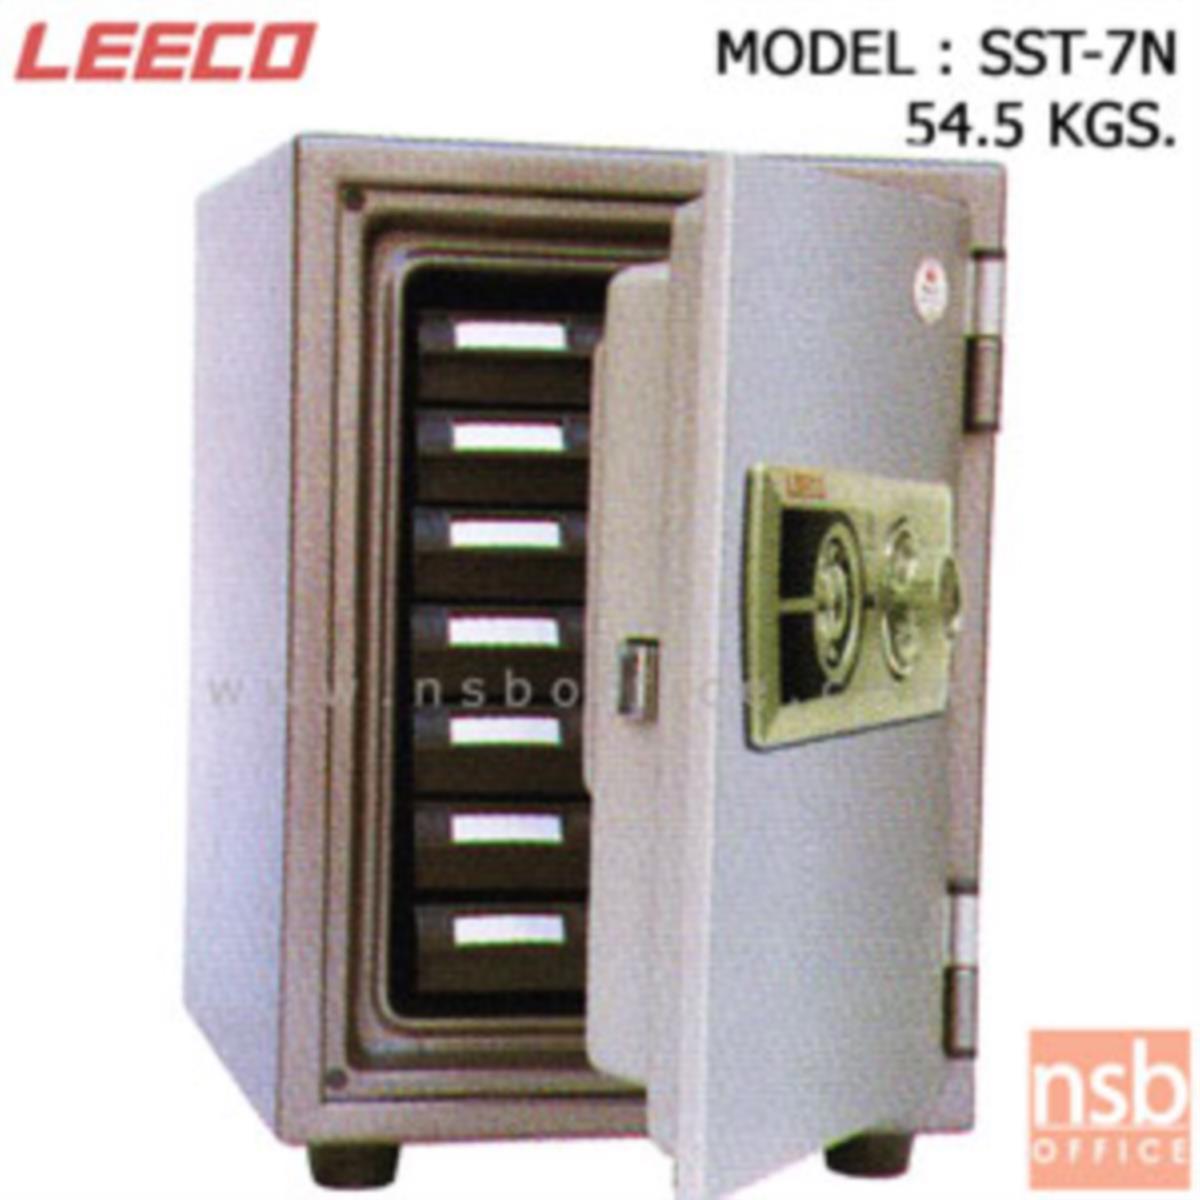 F02A050:ตู้เซฟนิรภัย 54.5 กก.(แนวตั้ง) ลีโก้ รุ่น SST-7N มี 1 กุญแจ 1 รหัส (มีถาดพลาสติก 7 ลิ้นชัก)   